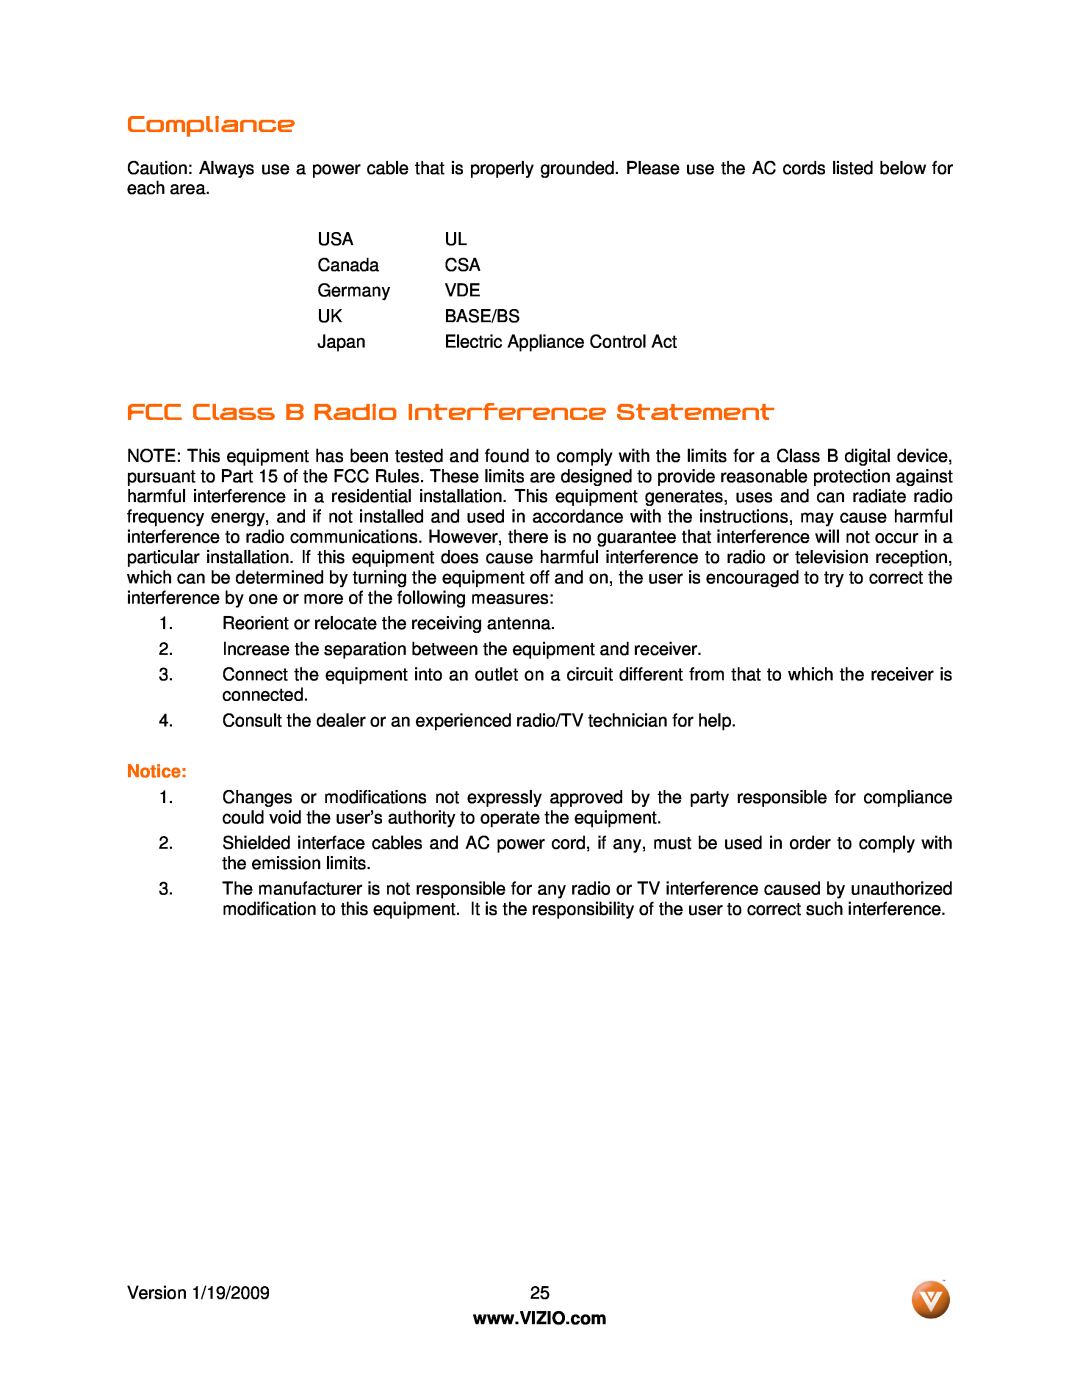 Vizio VSB210WS user manual Compliance, FCC Class B Radio Interference Statement, Notice 